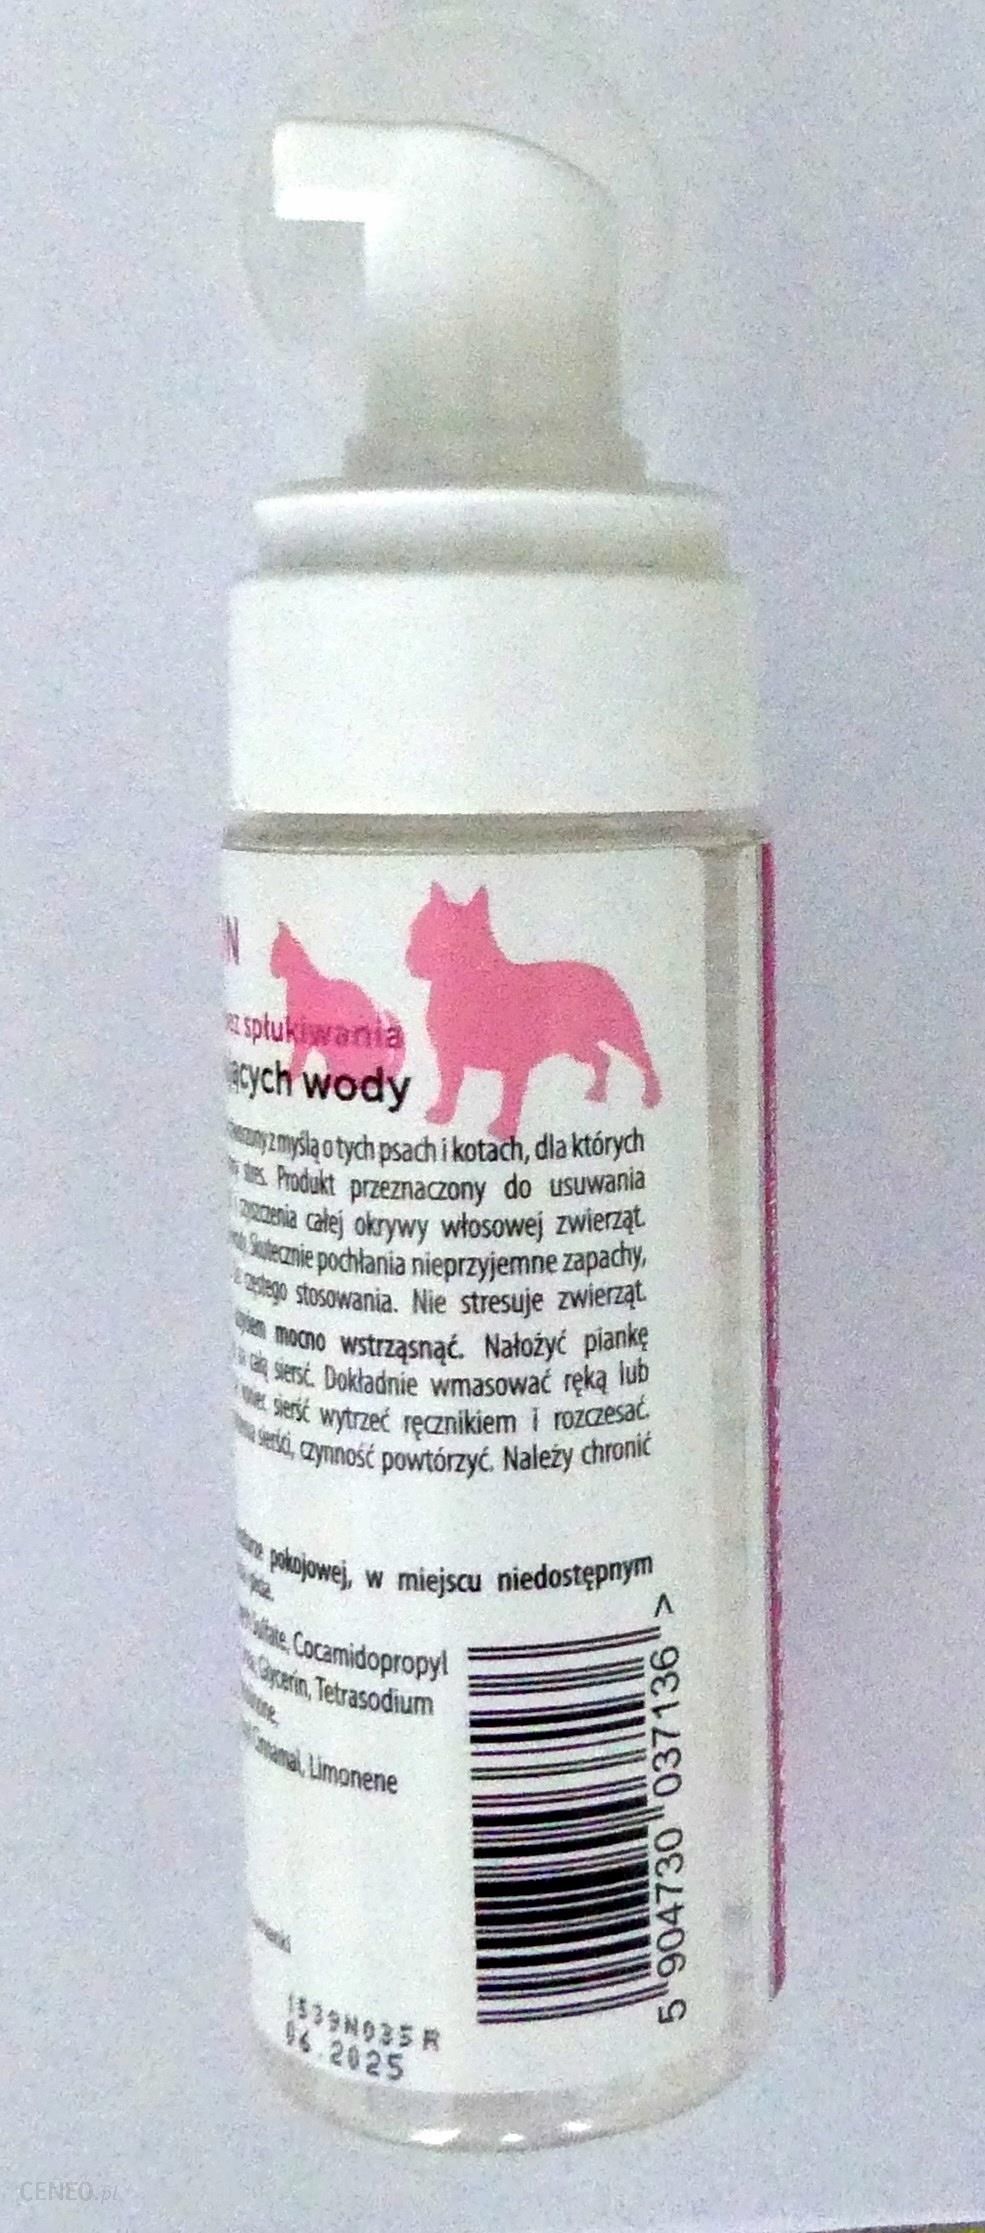 dush szampon dla psów